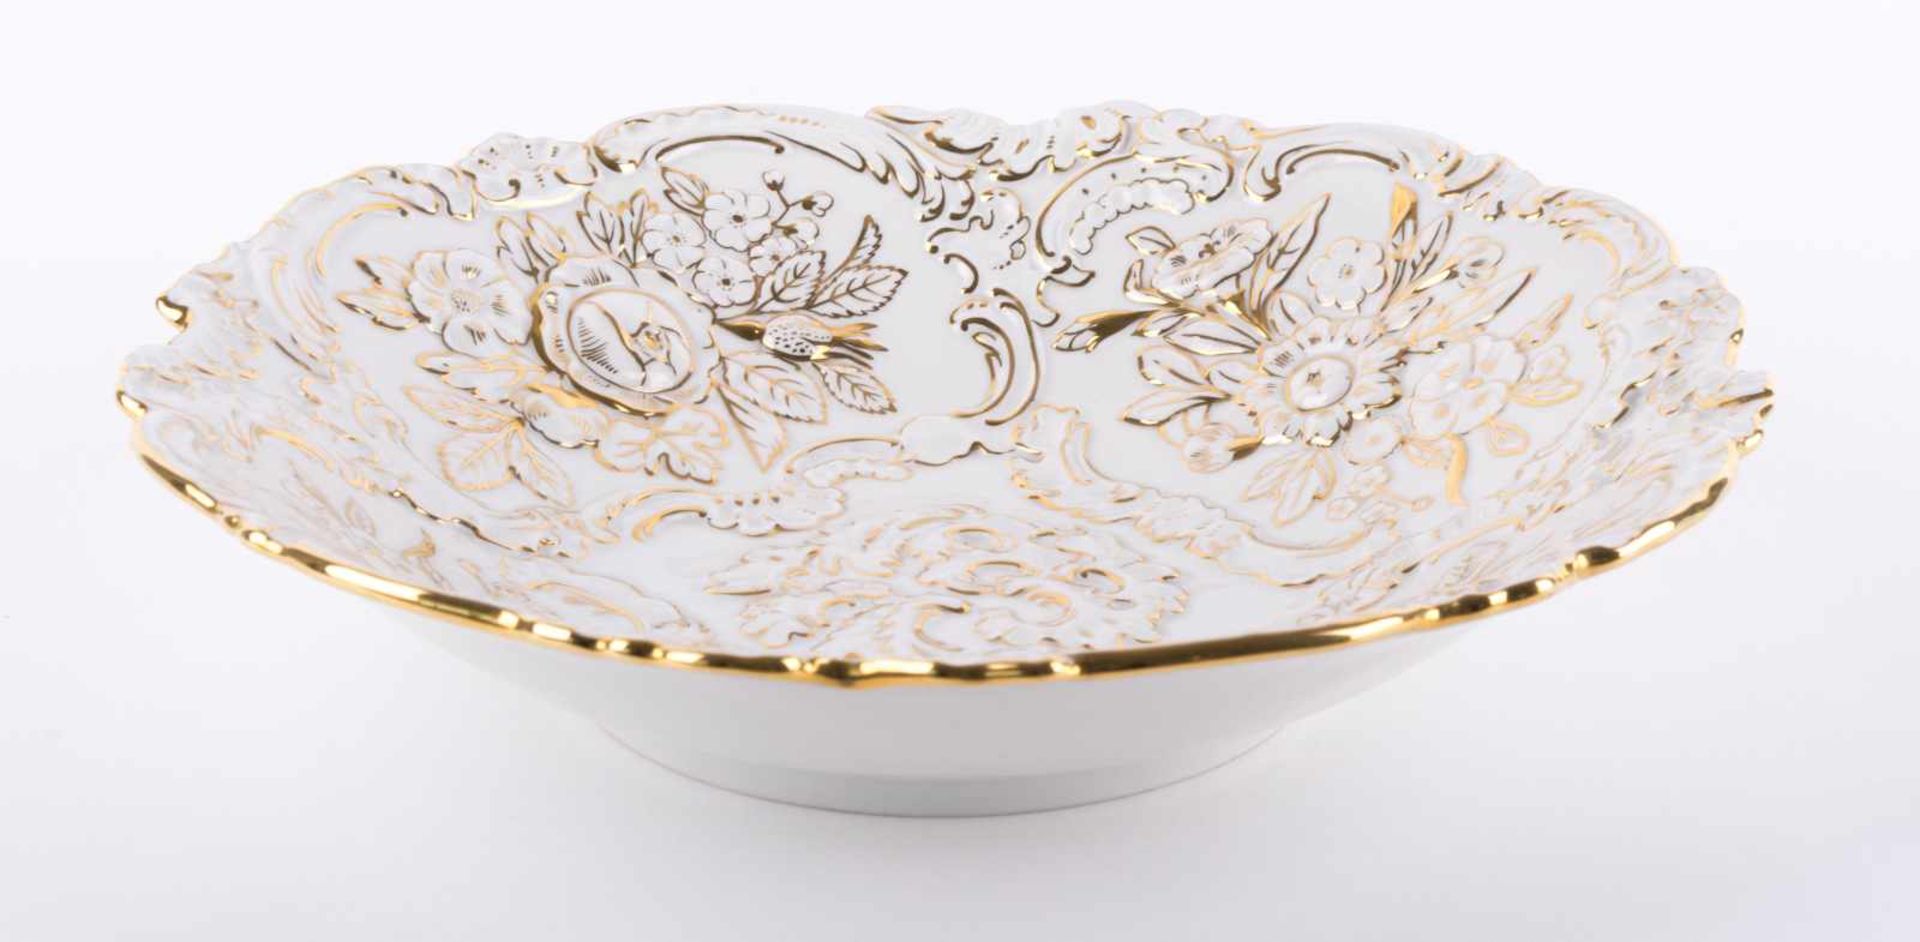 Meissen Prunkschale / Decoration bowl, Meissen Weiße Prunkschale mit Blüten- und Blattrelief, 4